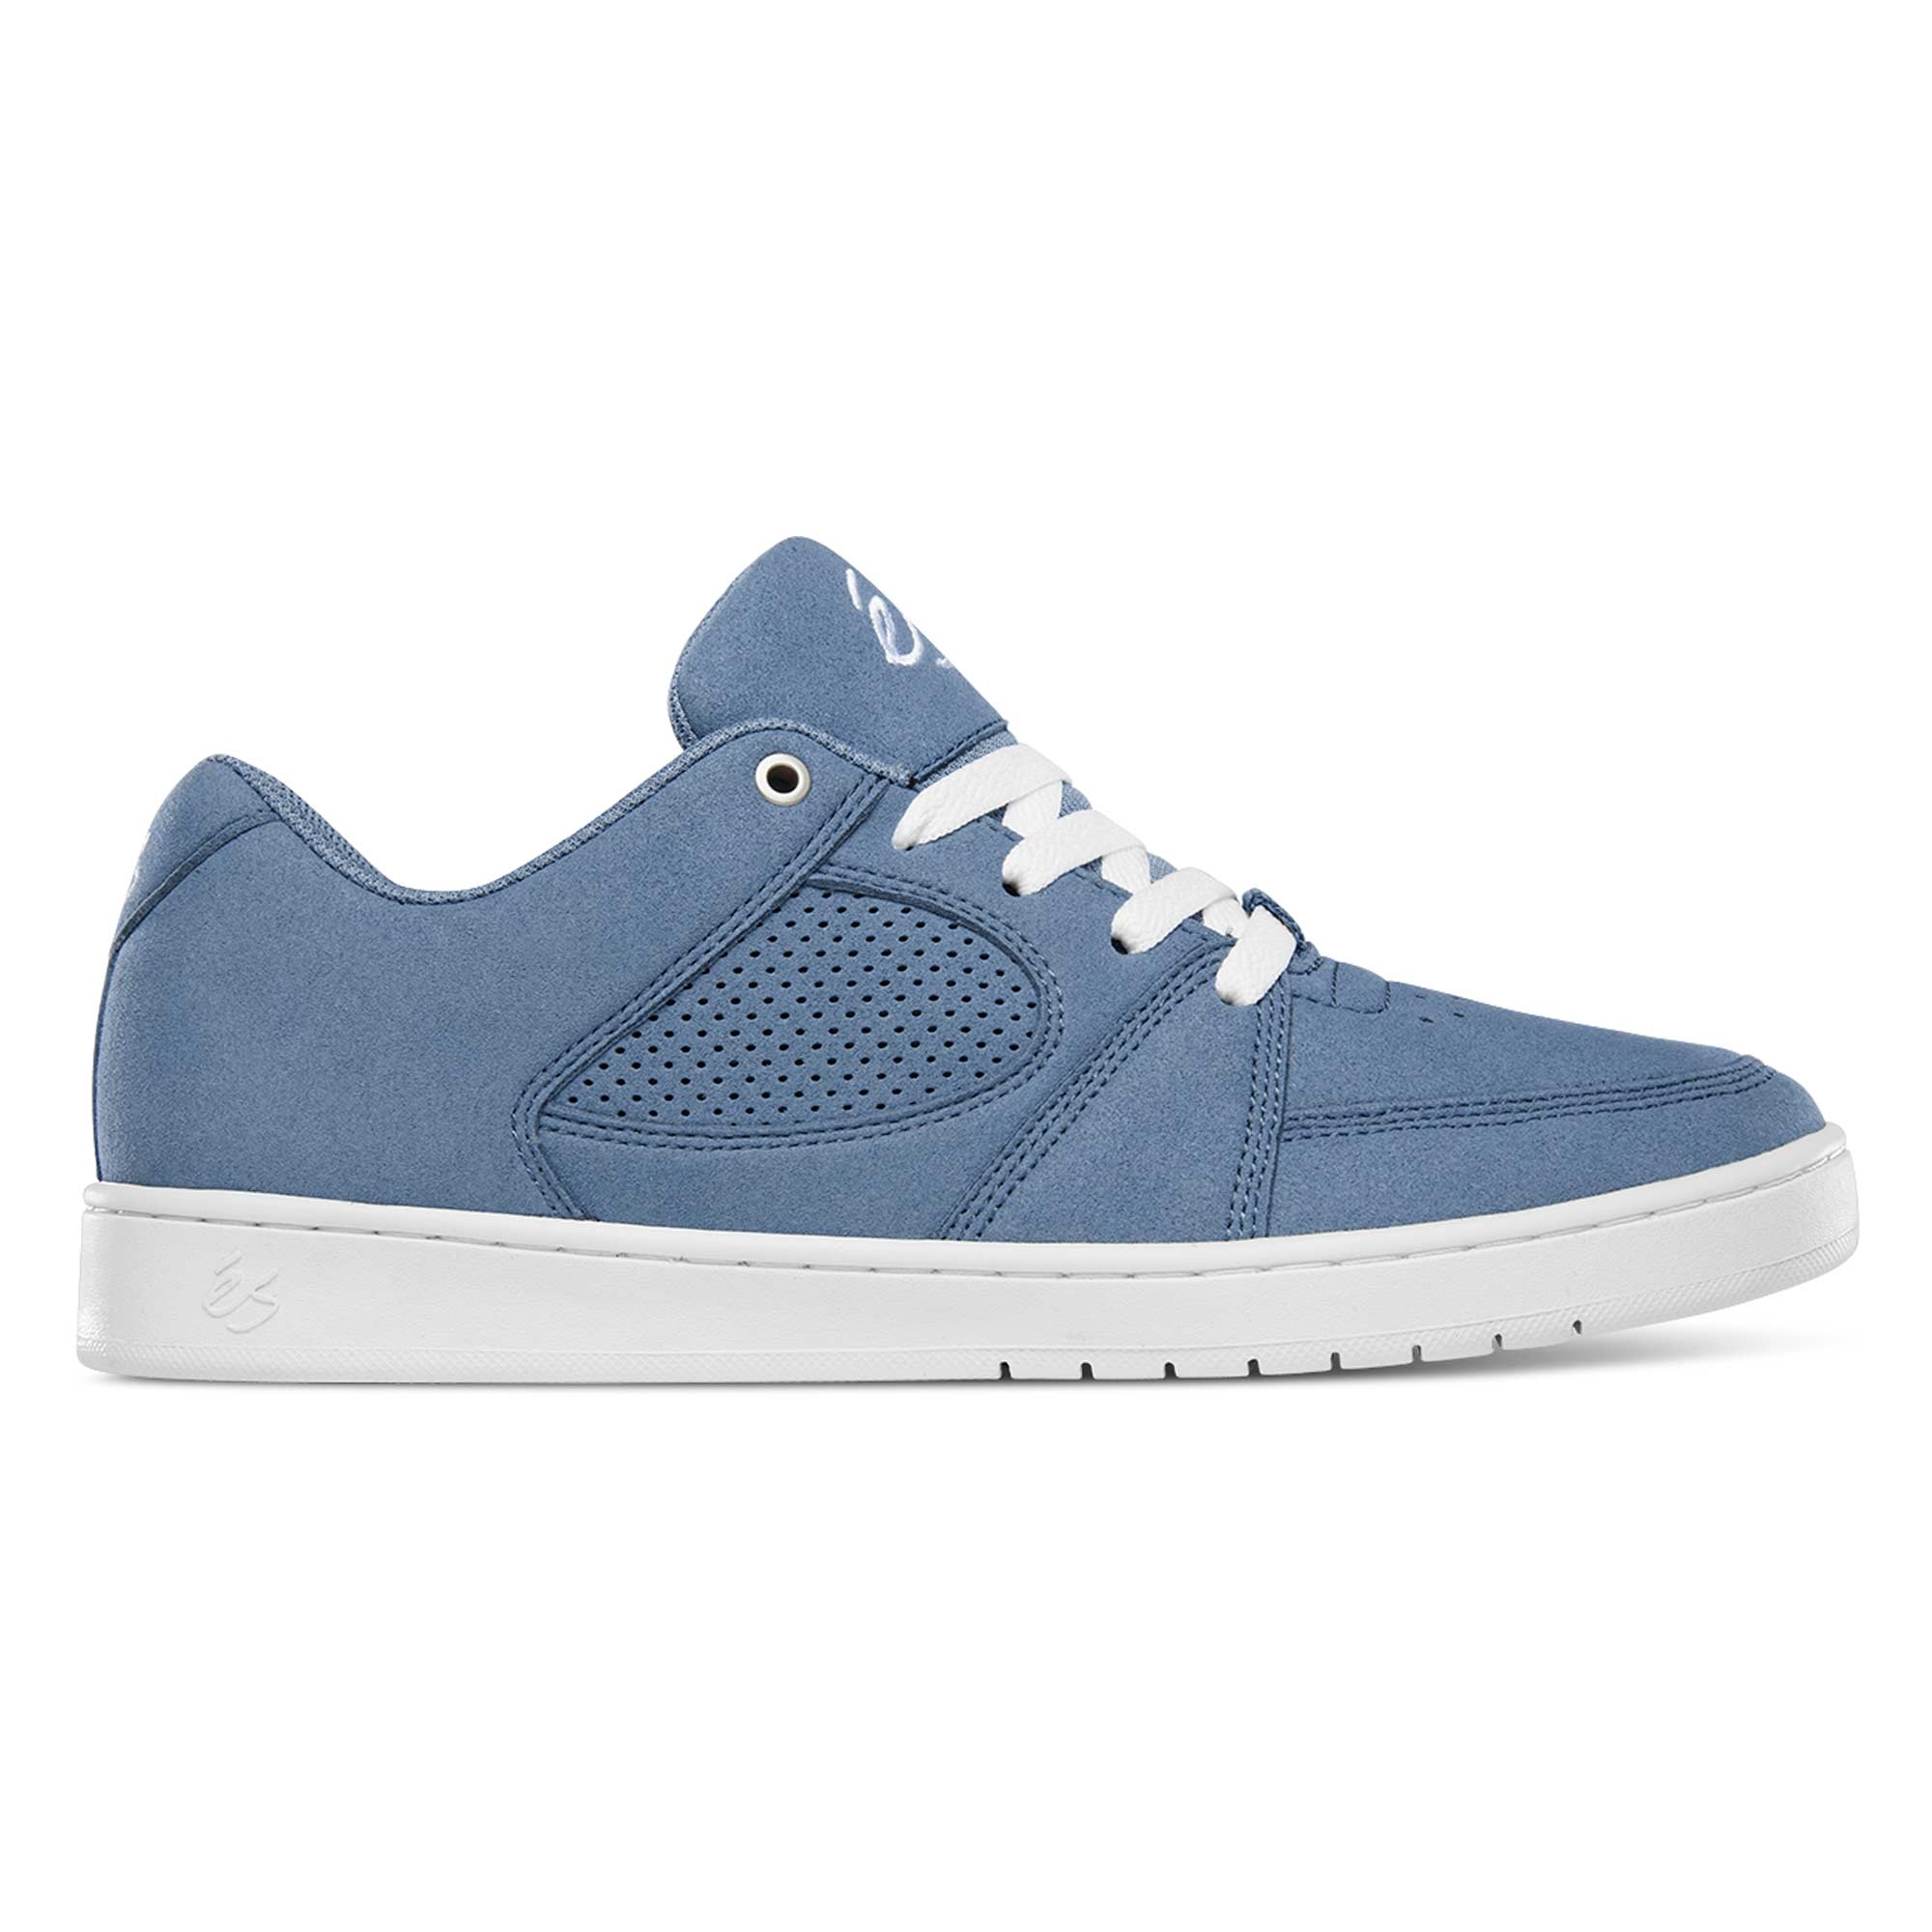 eS SKB Shoe ACCEL SLIM blu/gry/whi, blue/gey/white